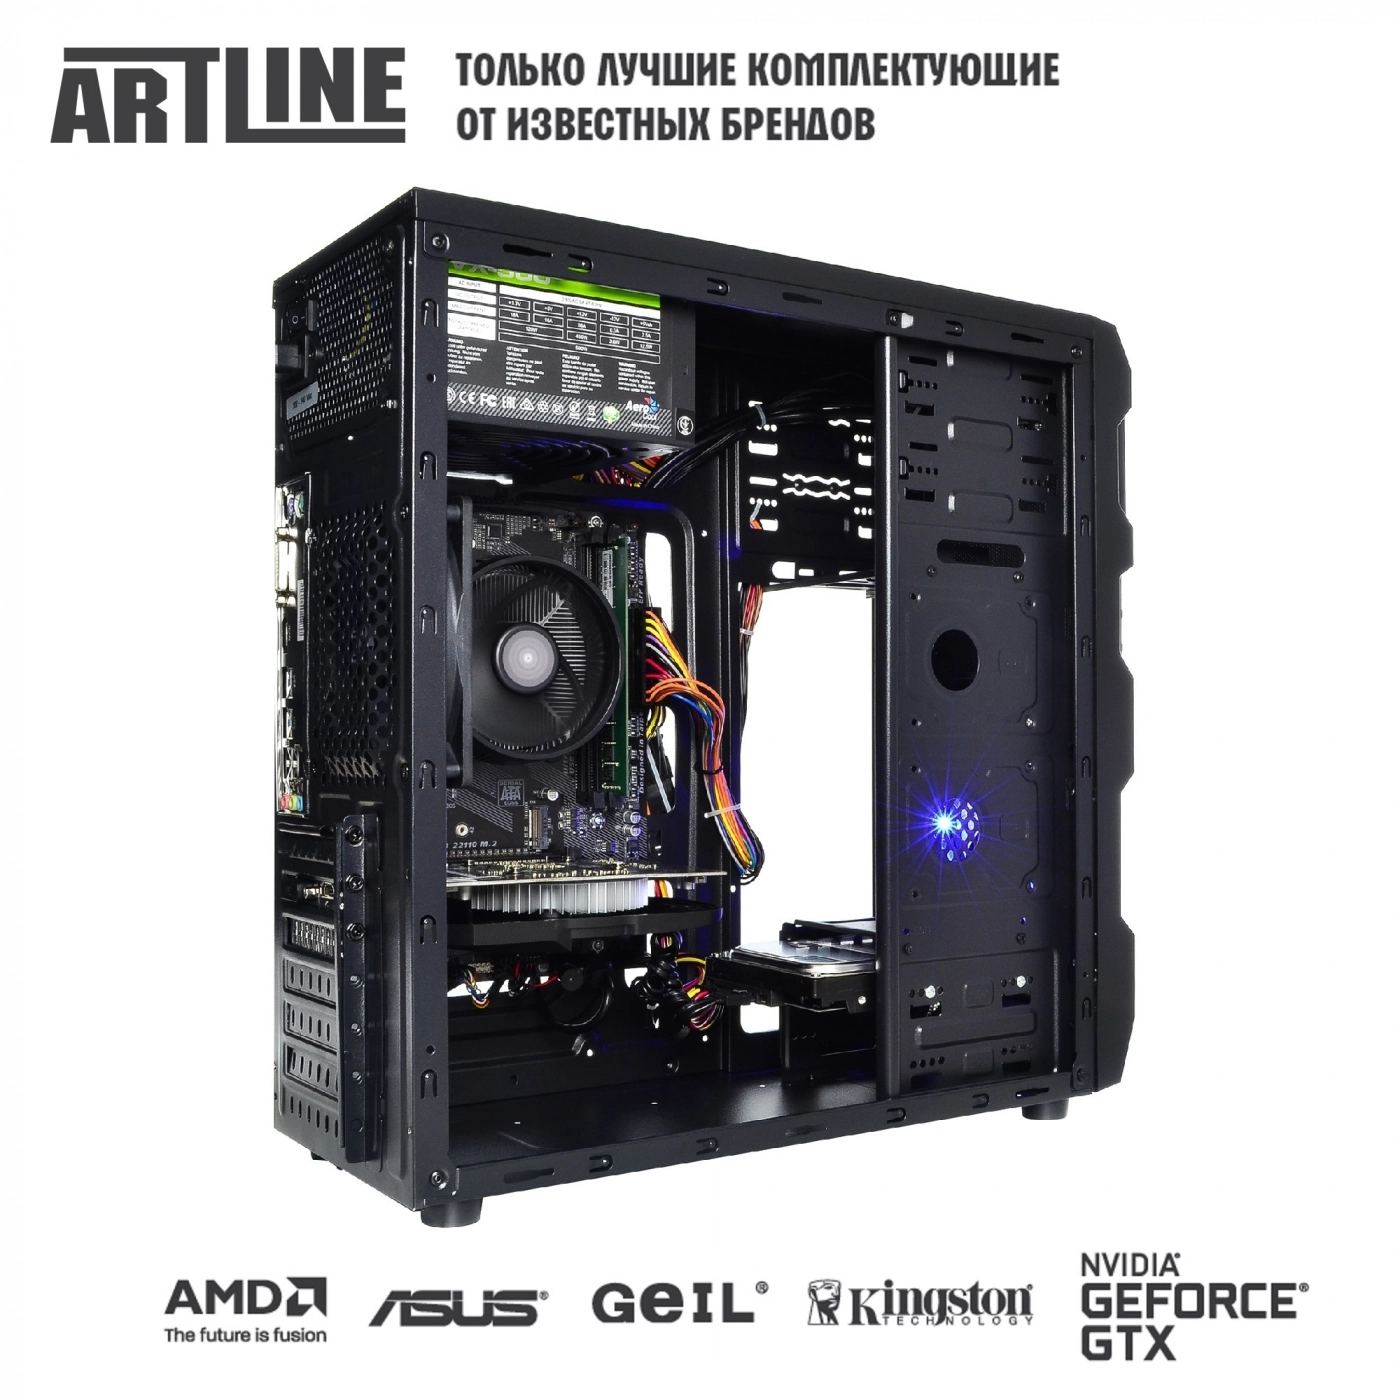 Купить Компьютер ARTLINE Gaming X43v16 - фото 6